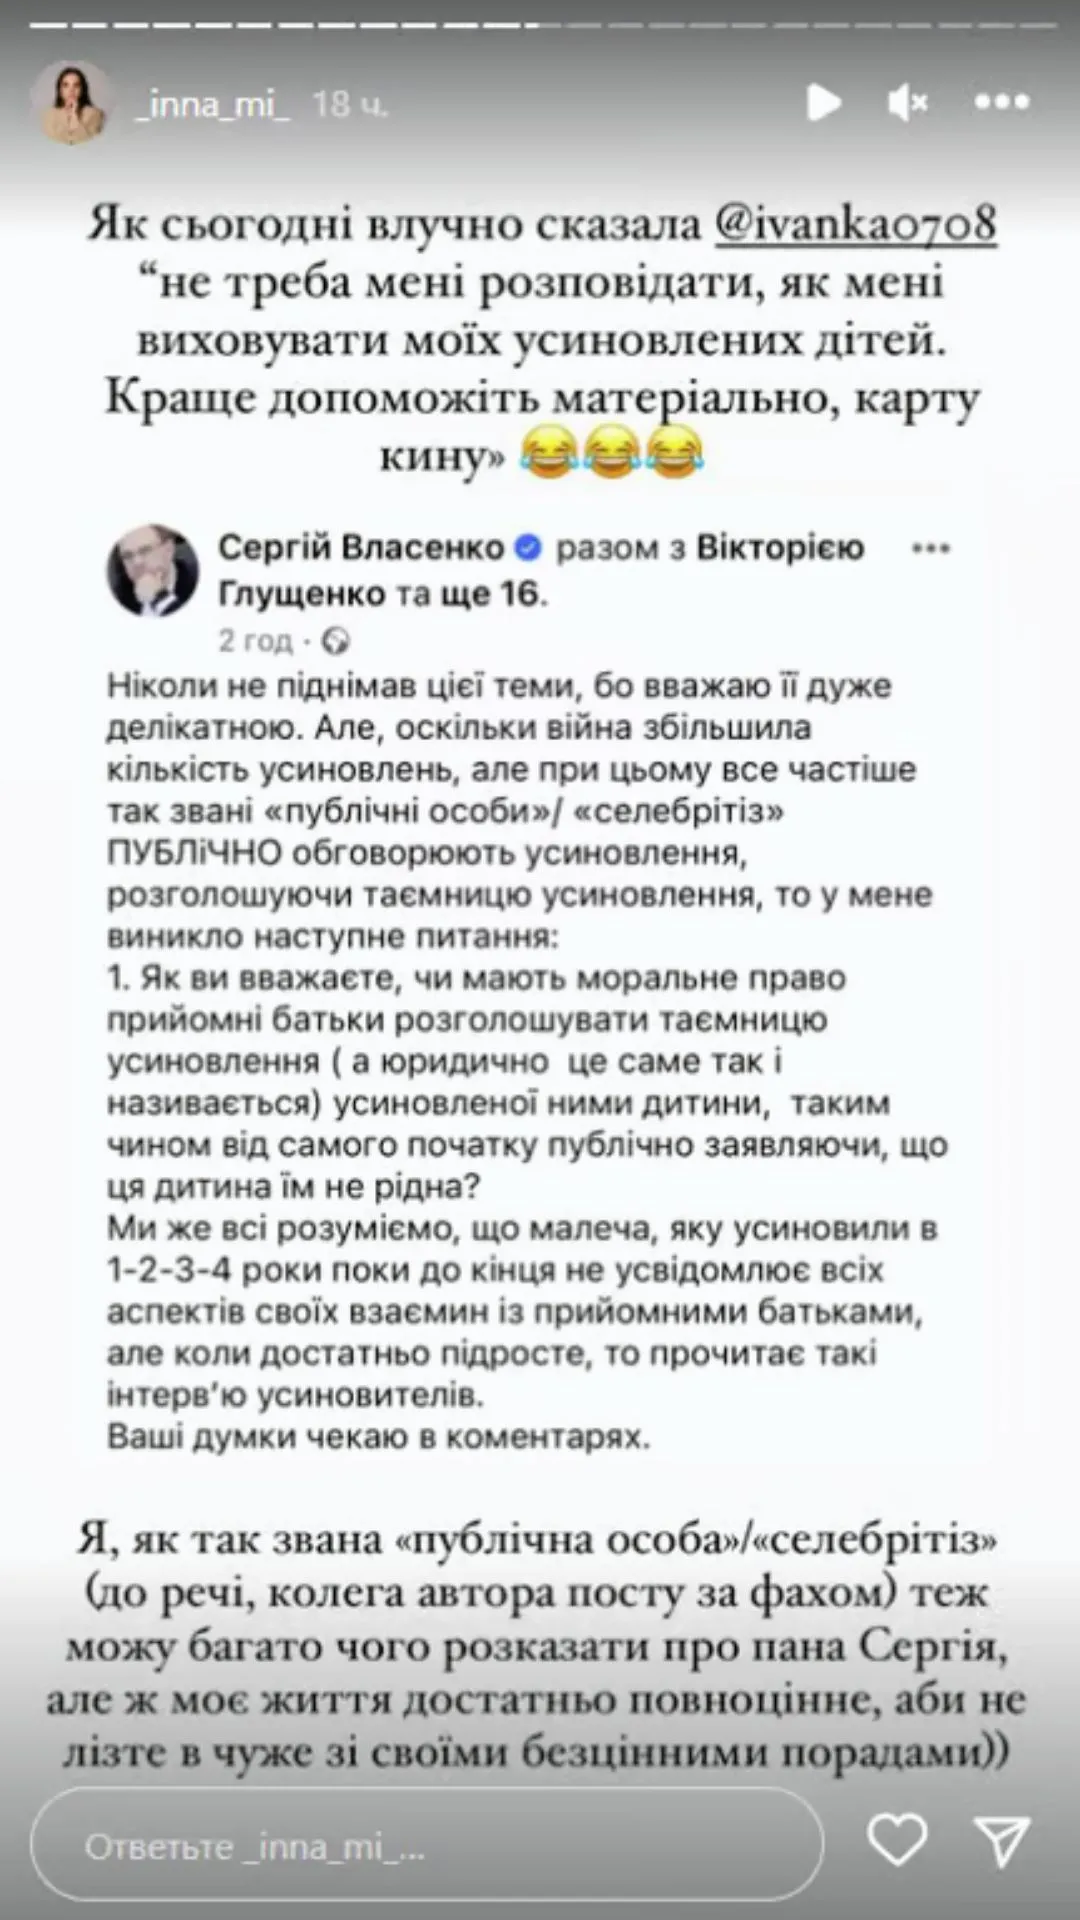 Инна Мирошниченко ответила на хейт от адвоката